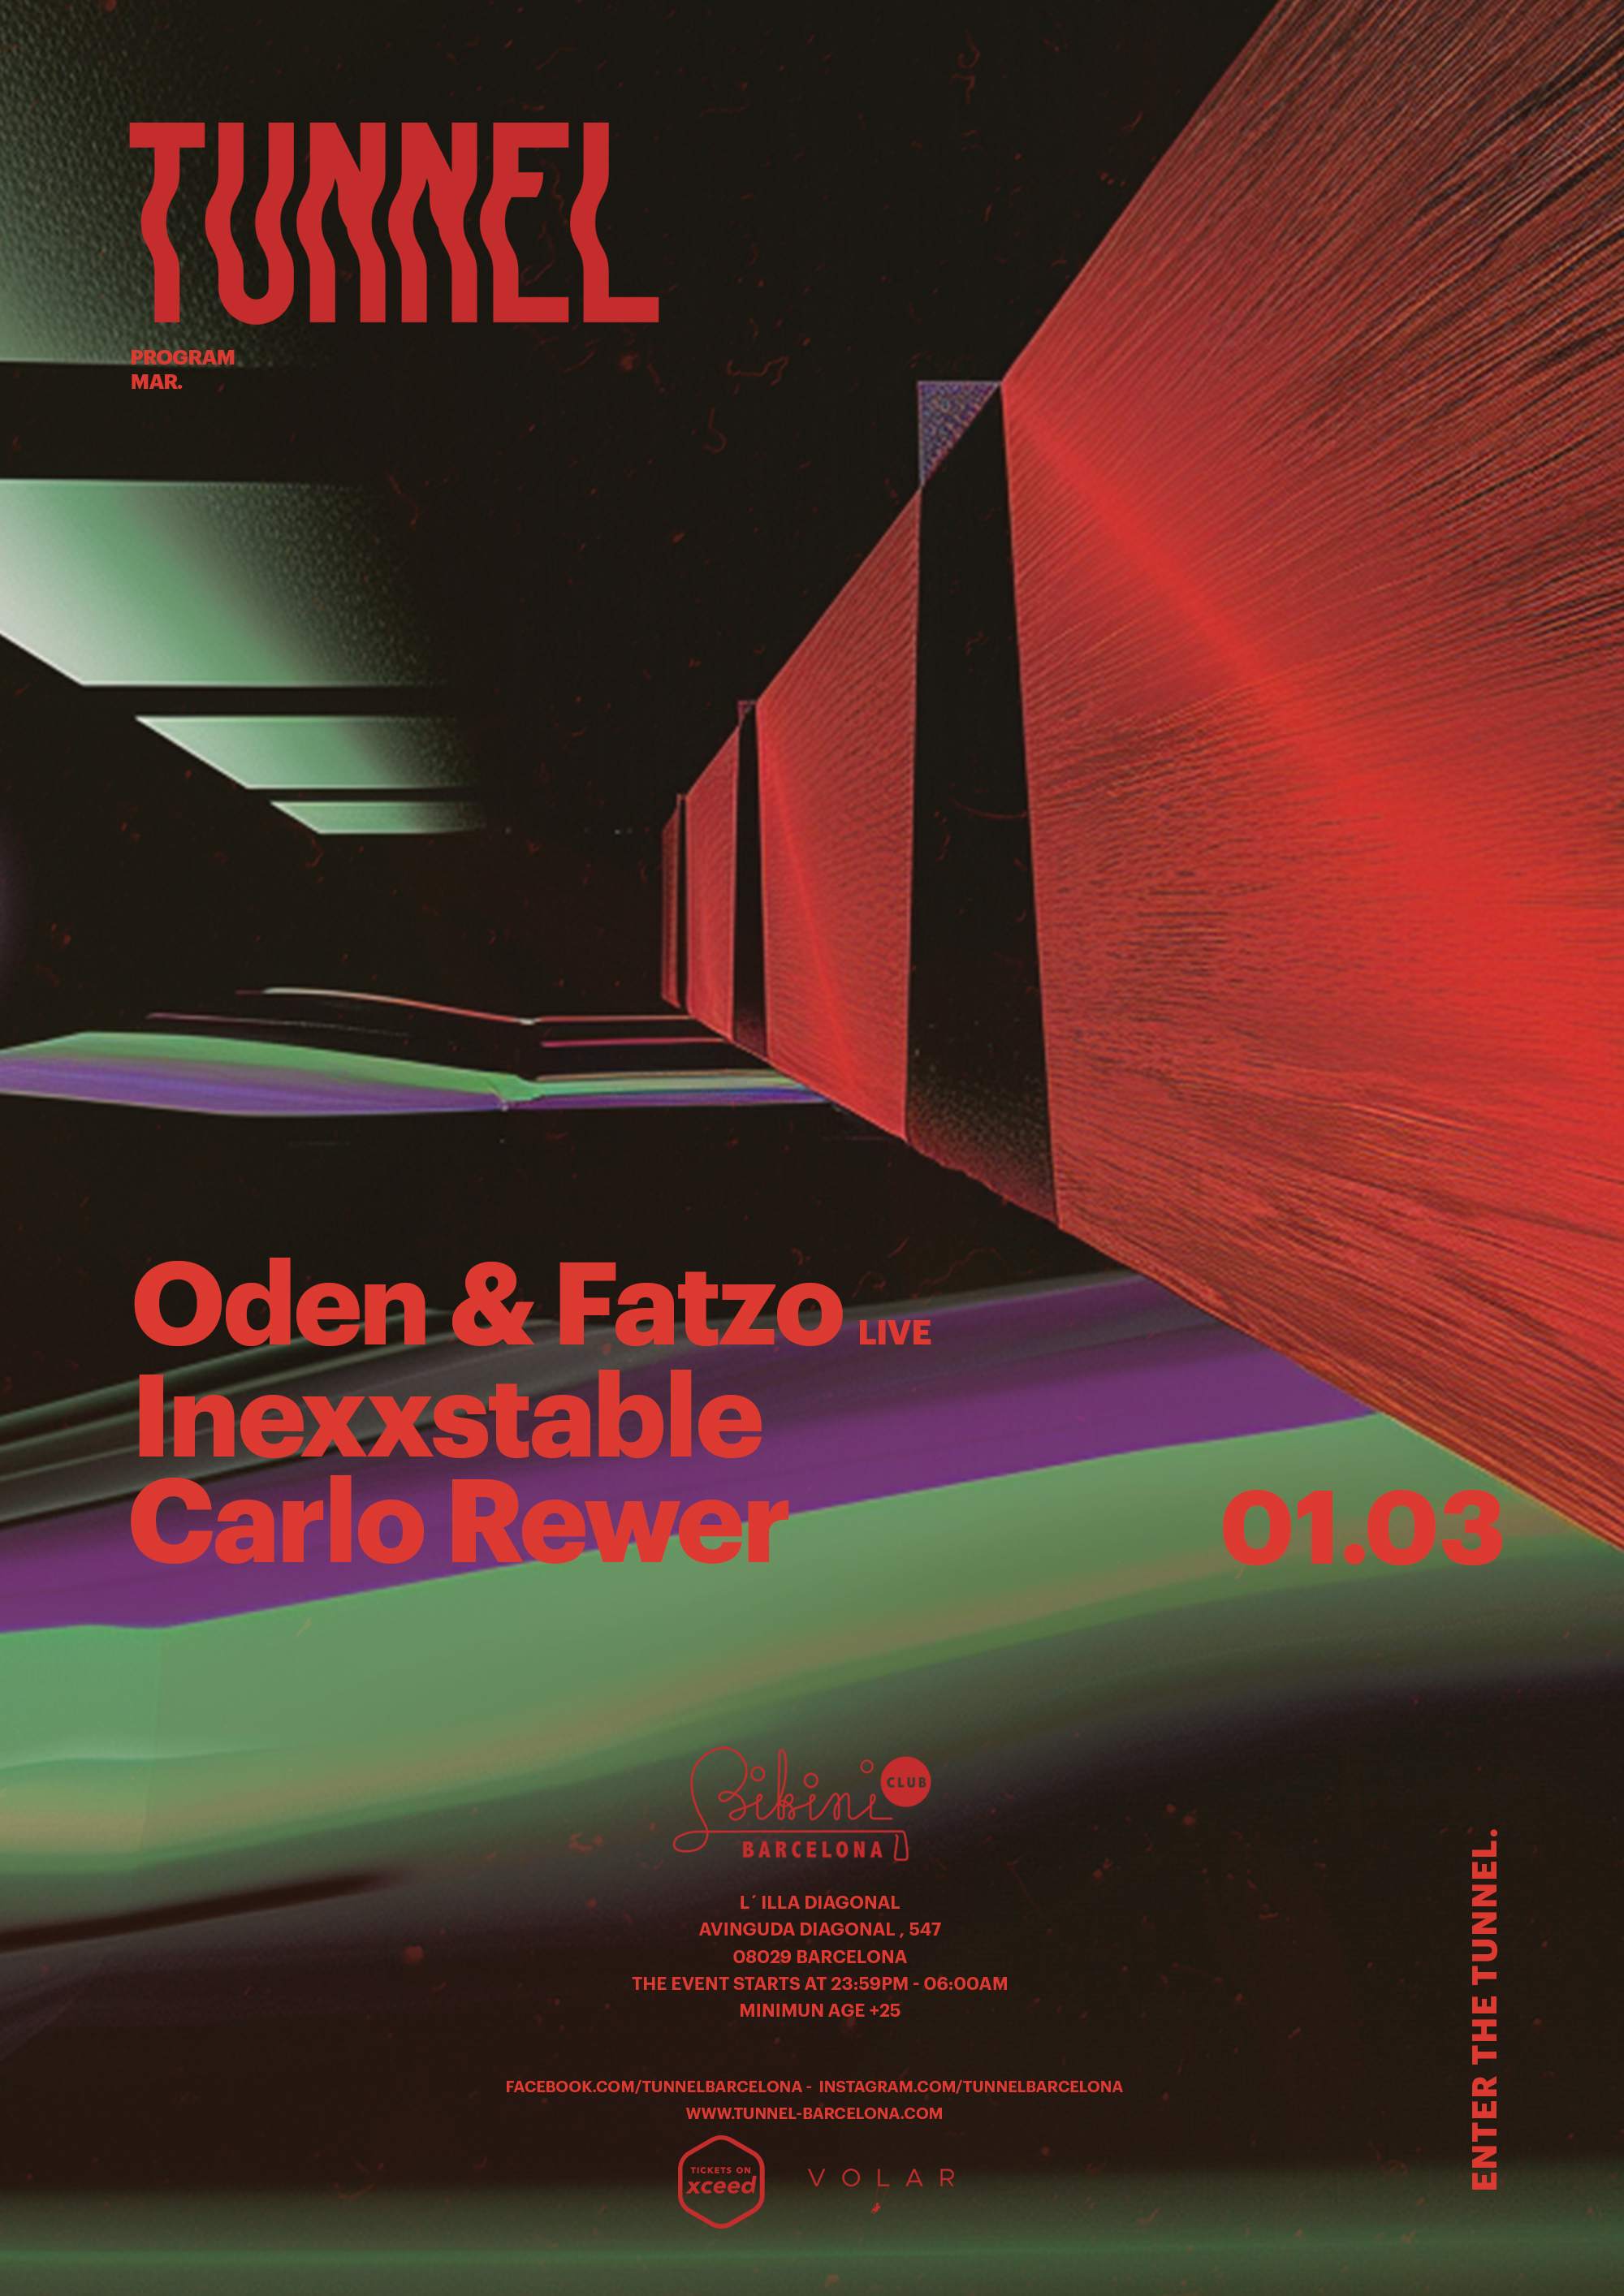 Tunnel pres. Oden & Fatzo (Live), INEXXSTABLE, Carlo Rewer - フライヤー表